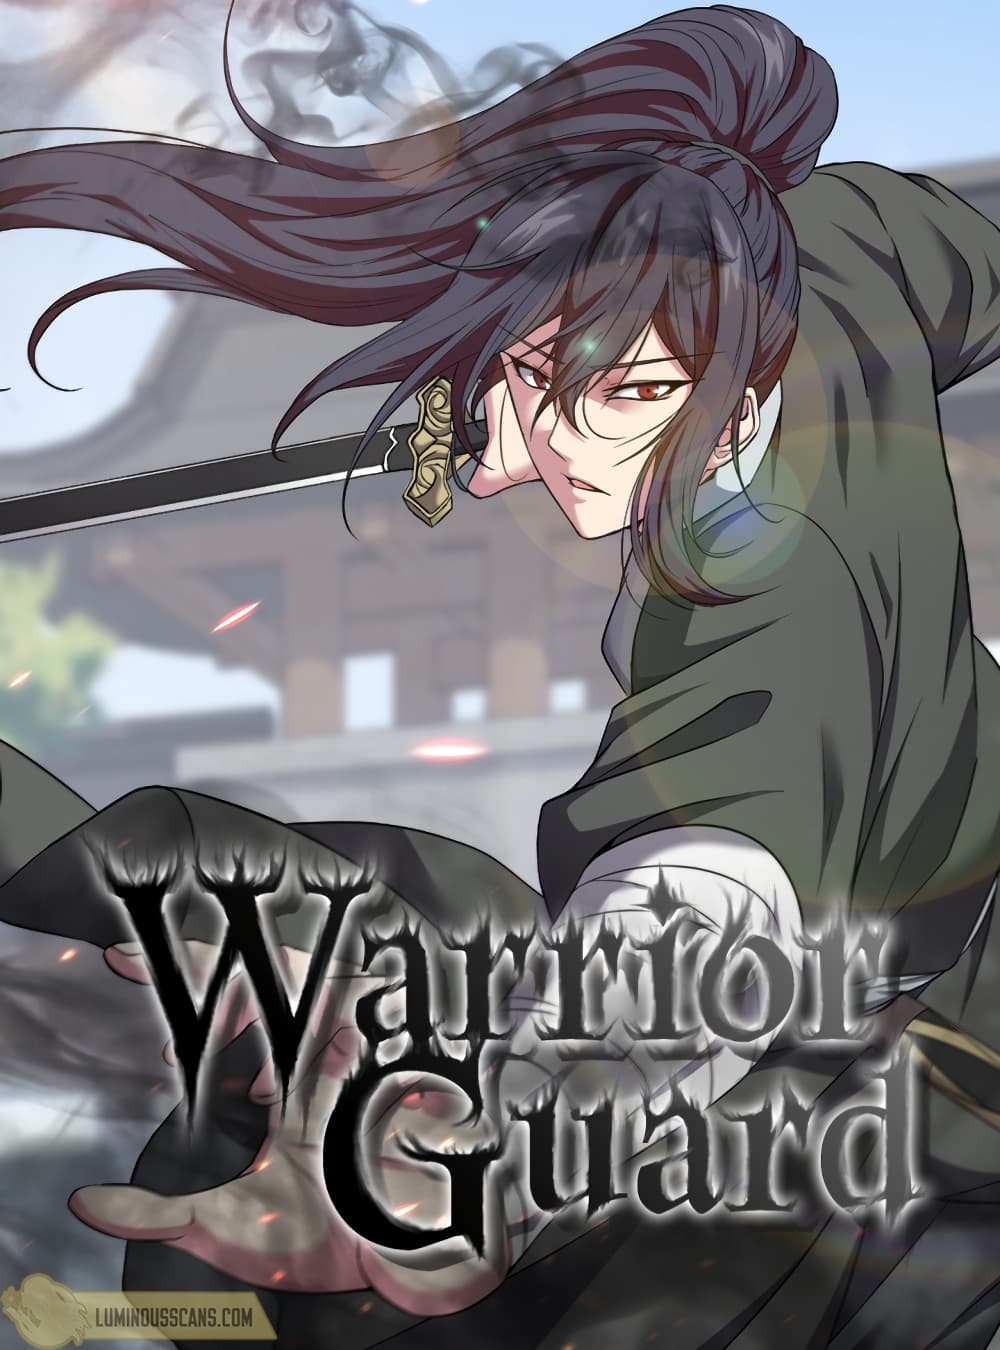 Warrior Guard ตอนที่ 26 (1)